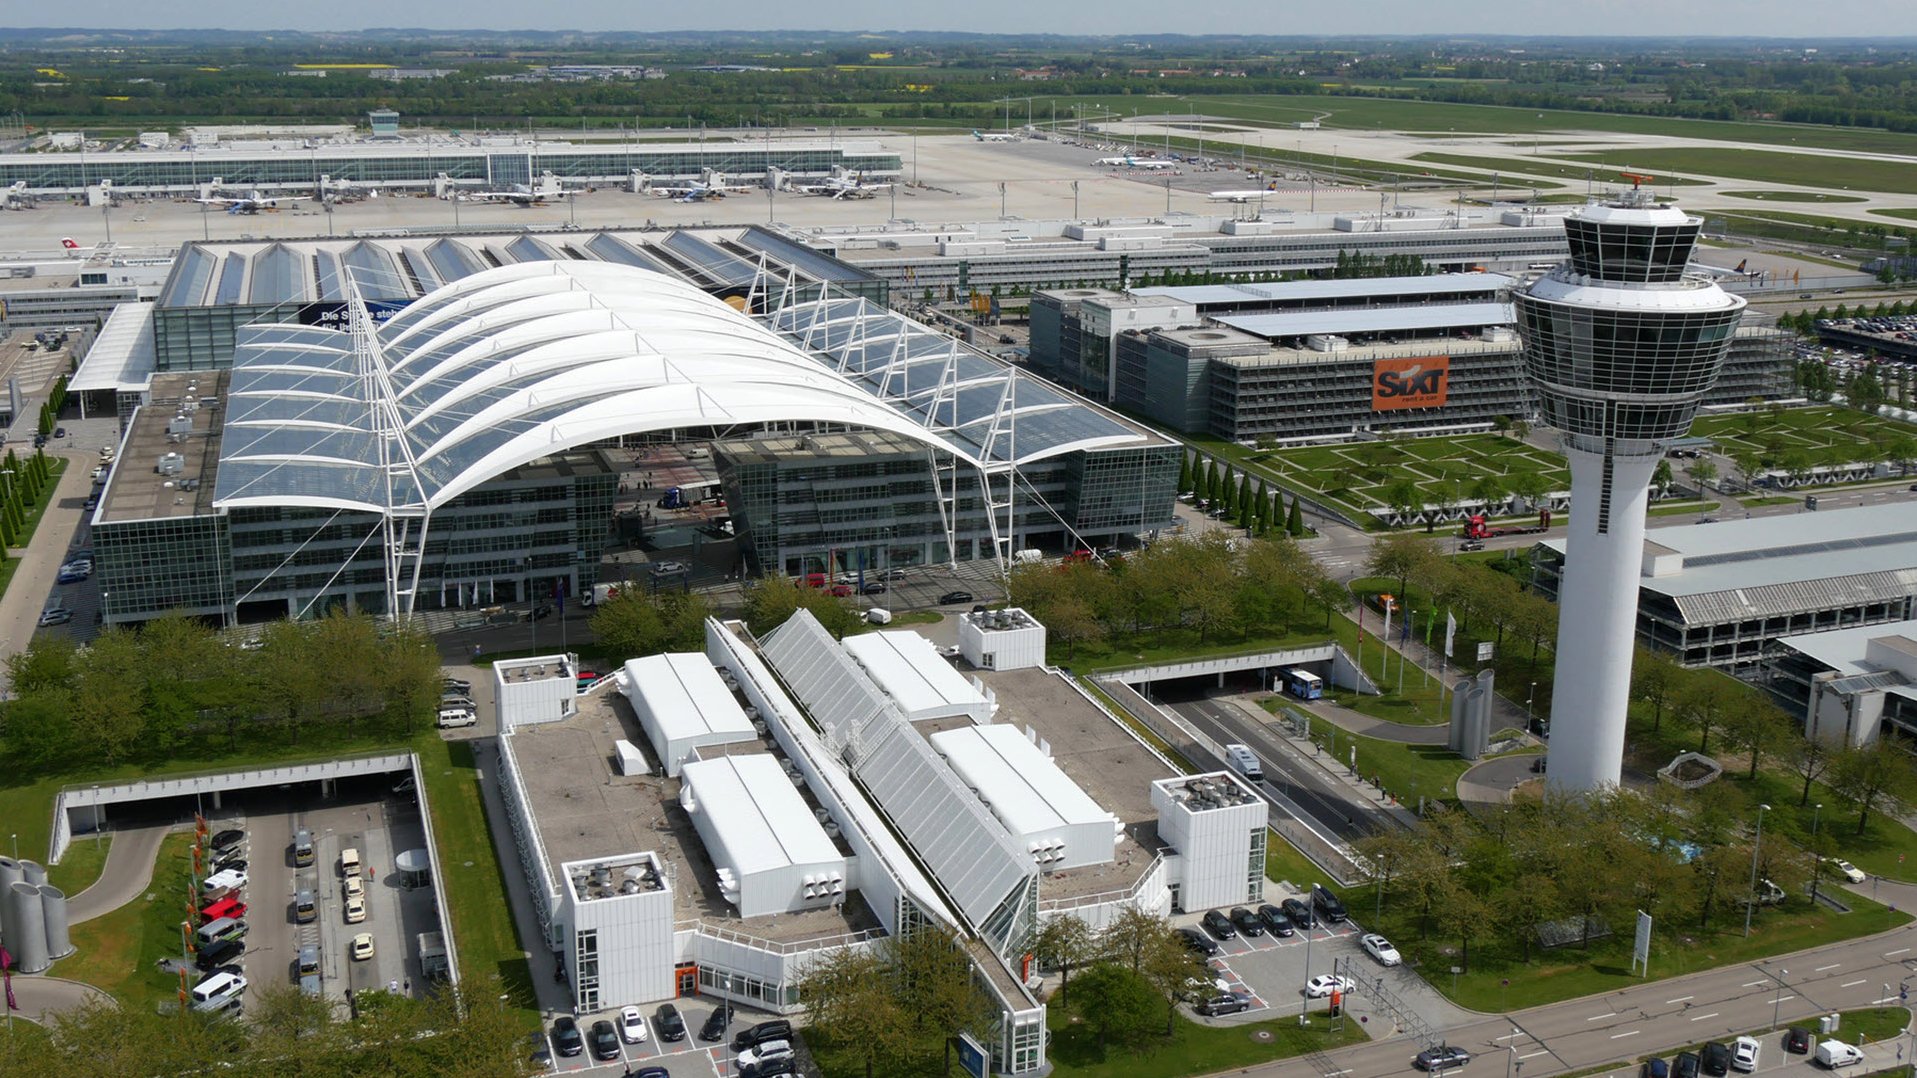 Flughafen München Airport Center und Zentralgebäude in München, Deutschland